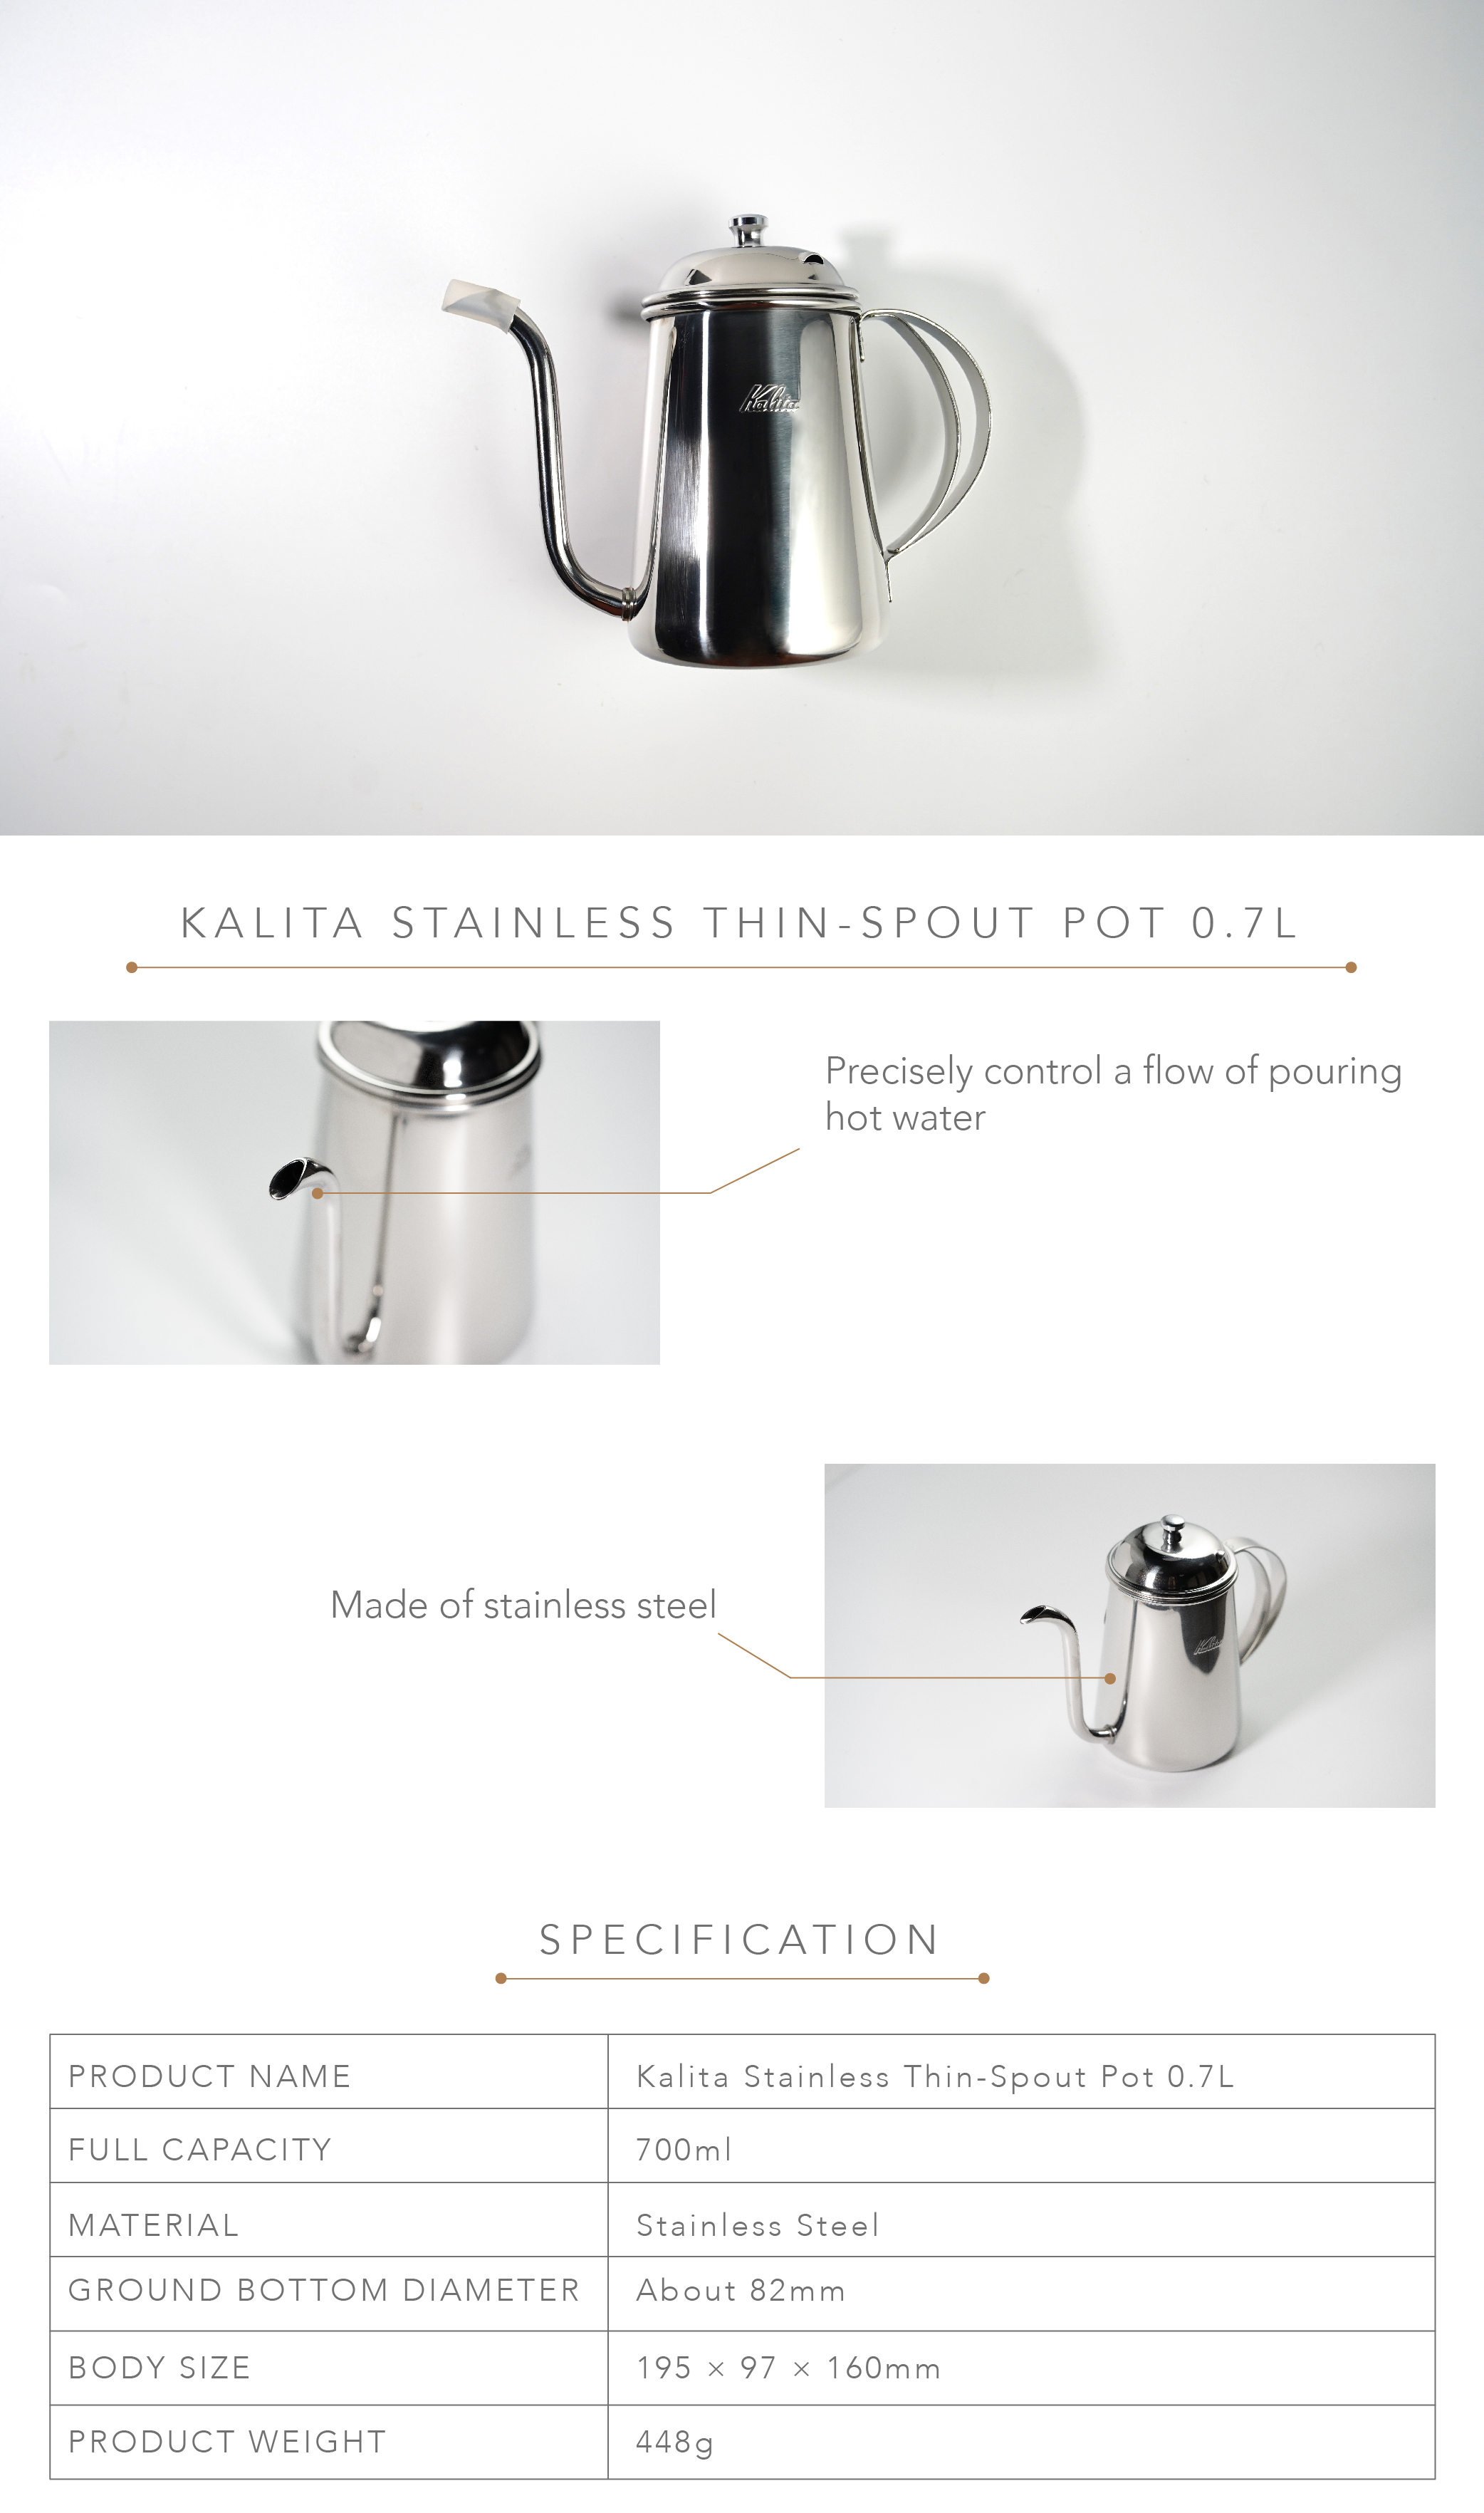 Kalita Stainless Thin-Spout Pot 0.7ℓ – Kohiraifu 珈琲生活